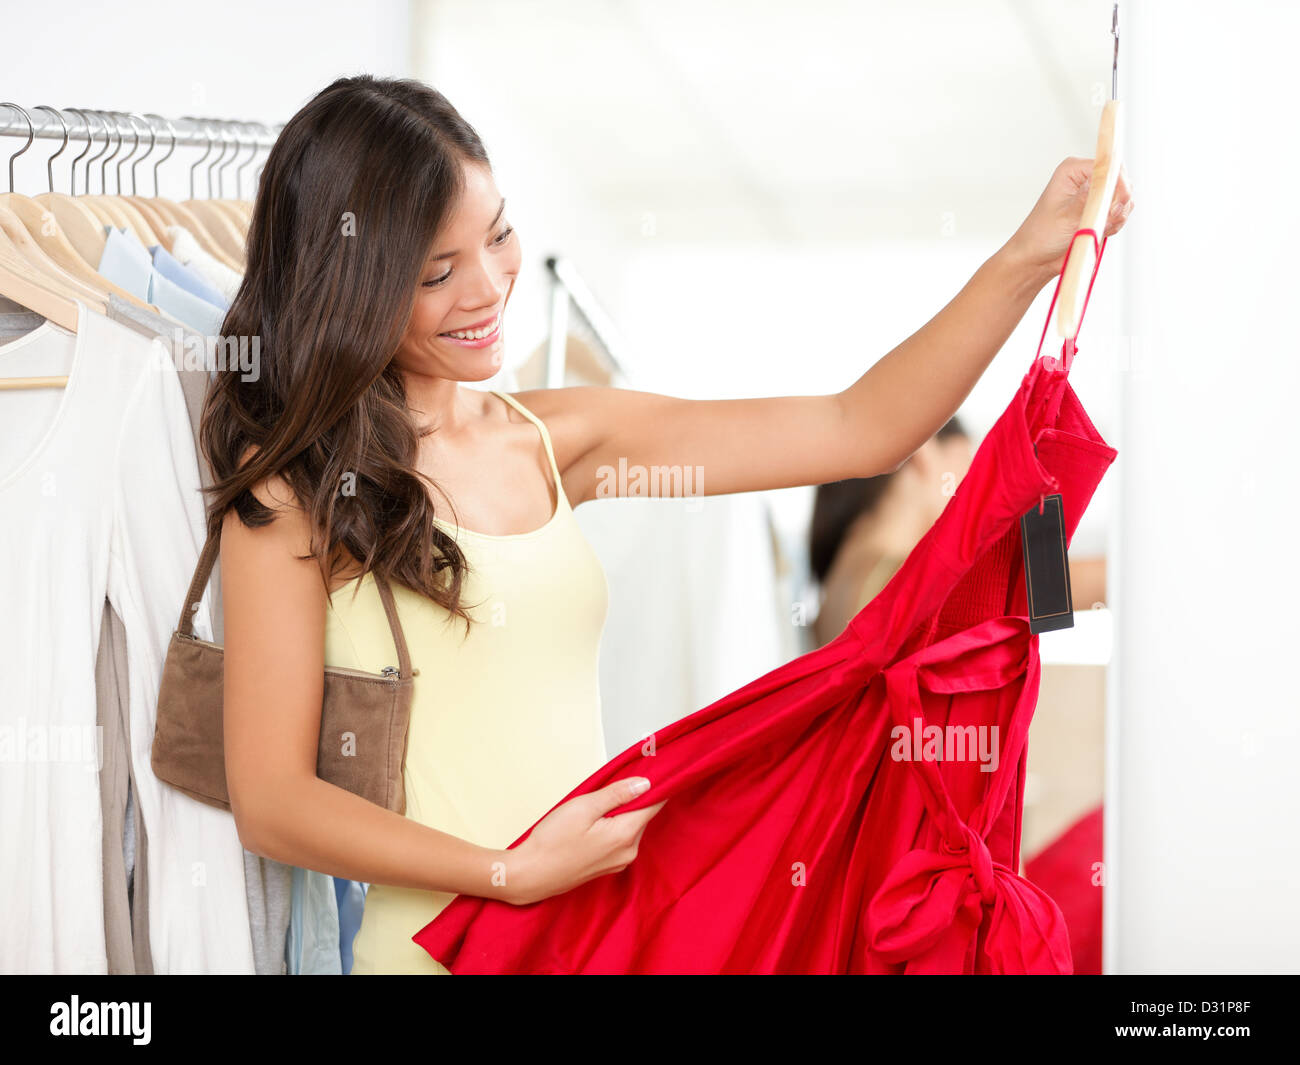 Bella multirazziale Asian / donna caucasica scegliendo abito rosso in negozio durante la vendita Foto Stock